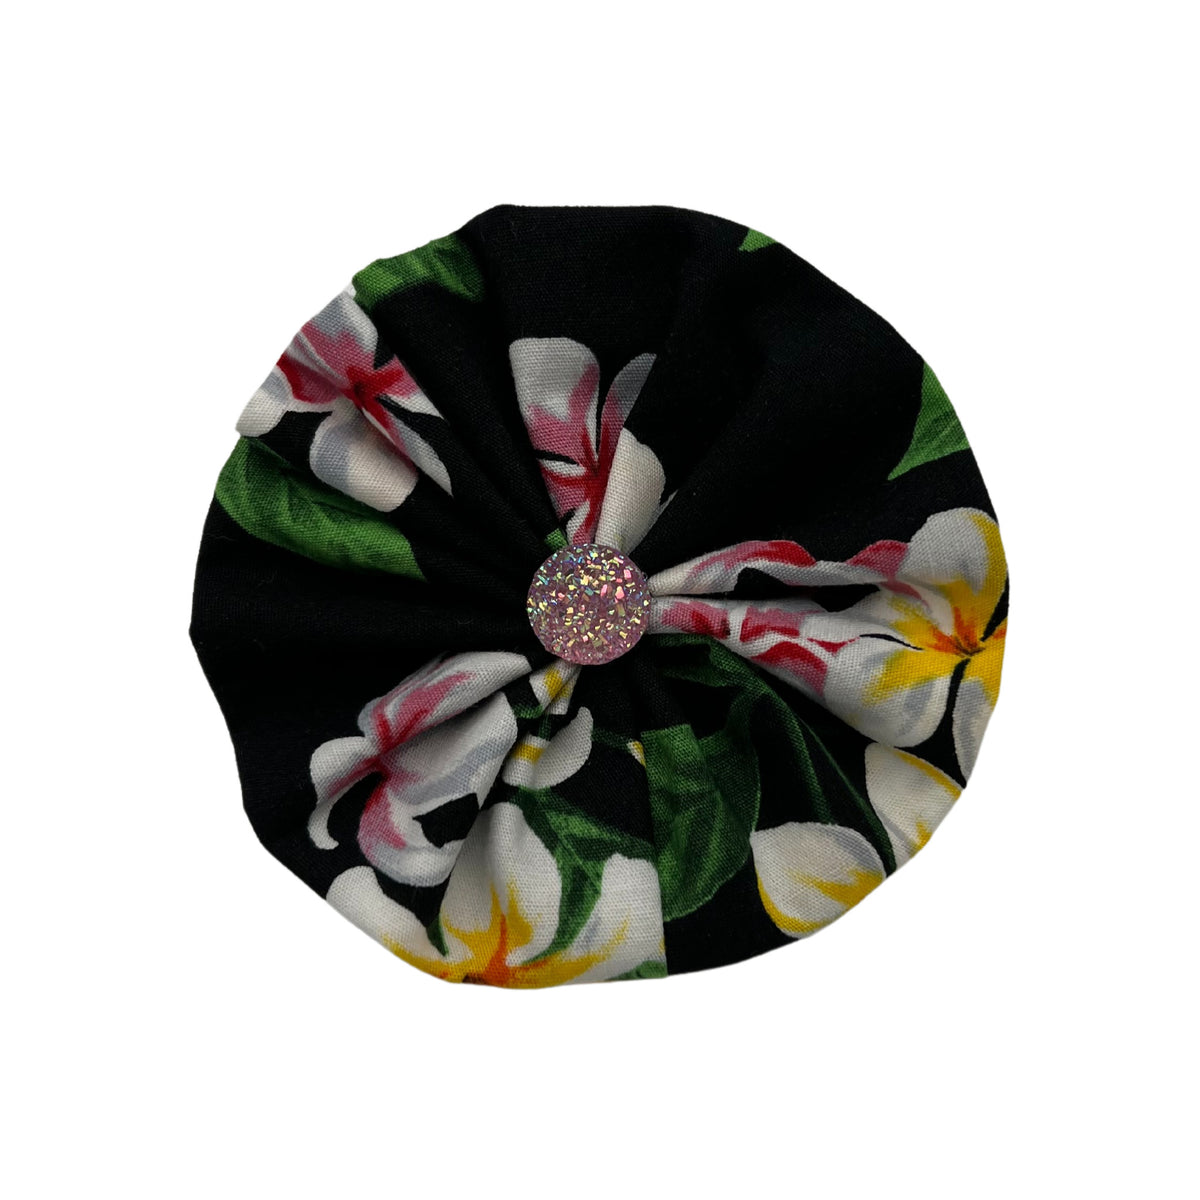 Pop-Up Mākeke - humBowbarks Pet Wear - Ruffle Flower - Pink Glitter - Front View